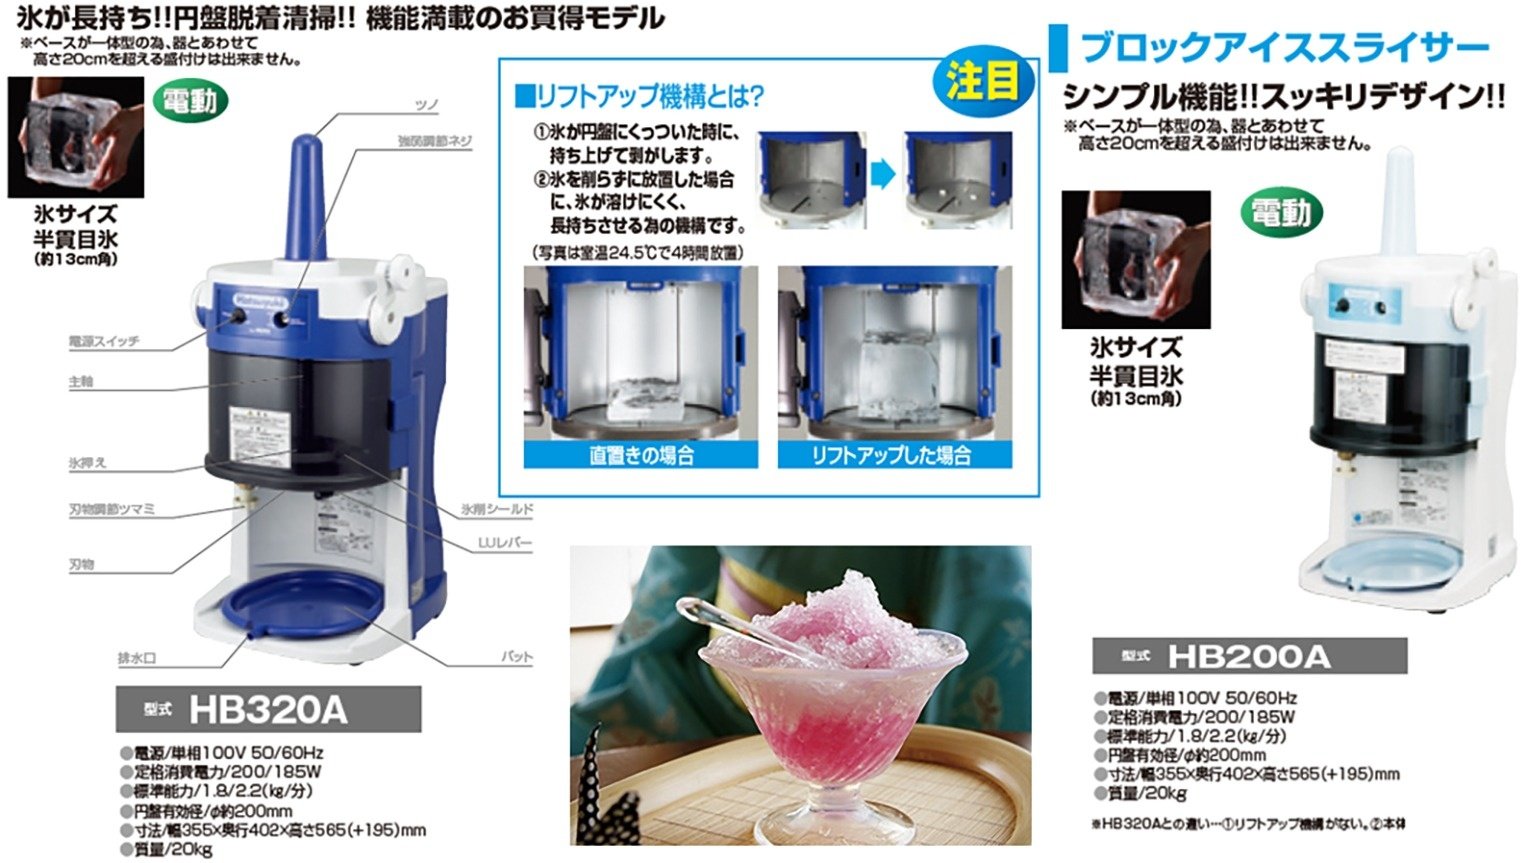 つめた〜い飲み物やかき氷を作る！氷削機のご紹介 | Youki Style 